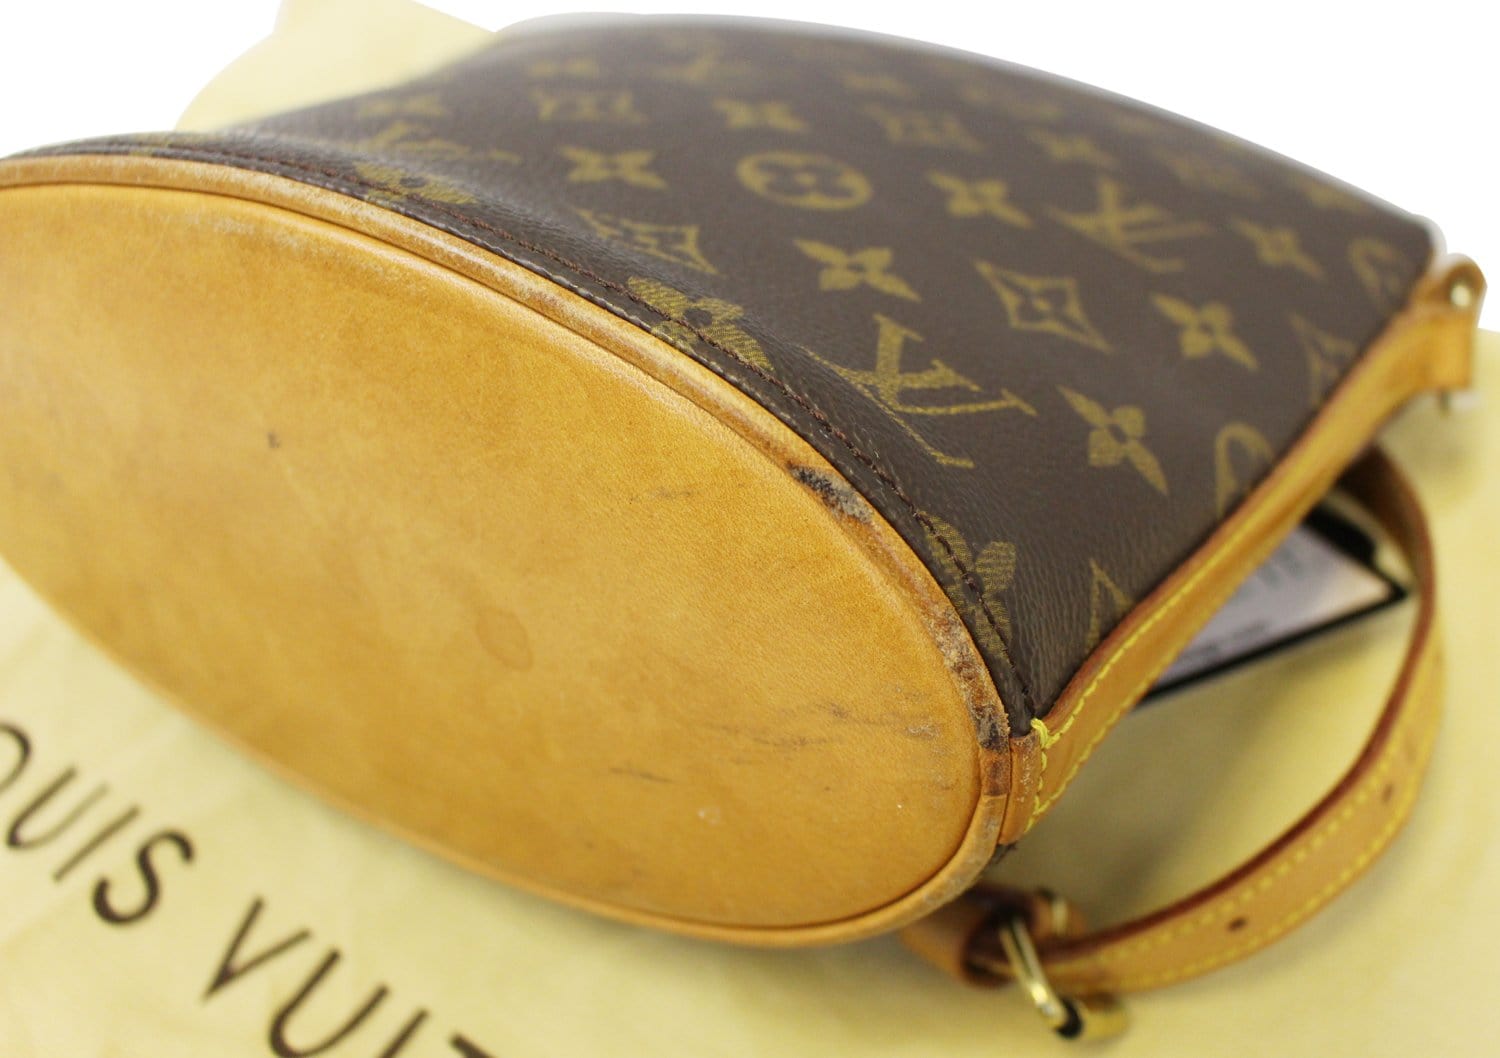 Louis Vuitton Drouot Brown Canvas Handbag (Pre-Owned)